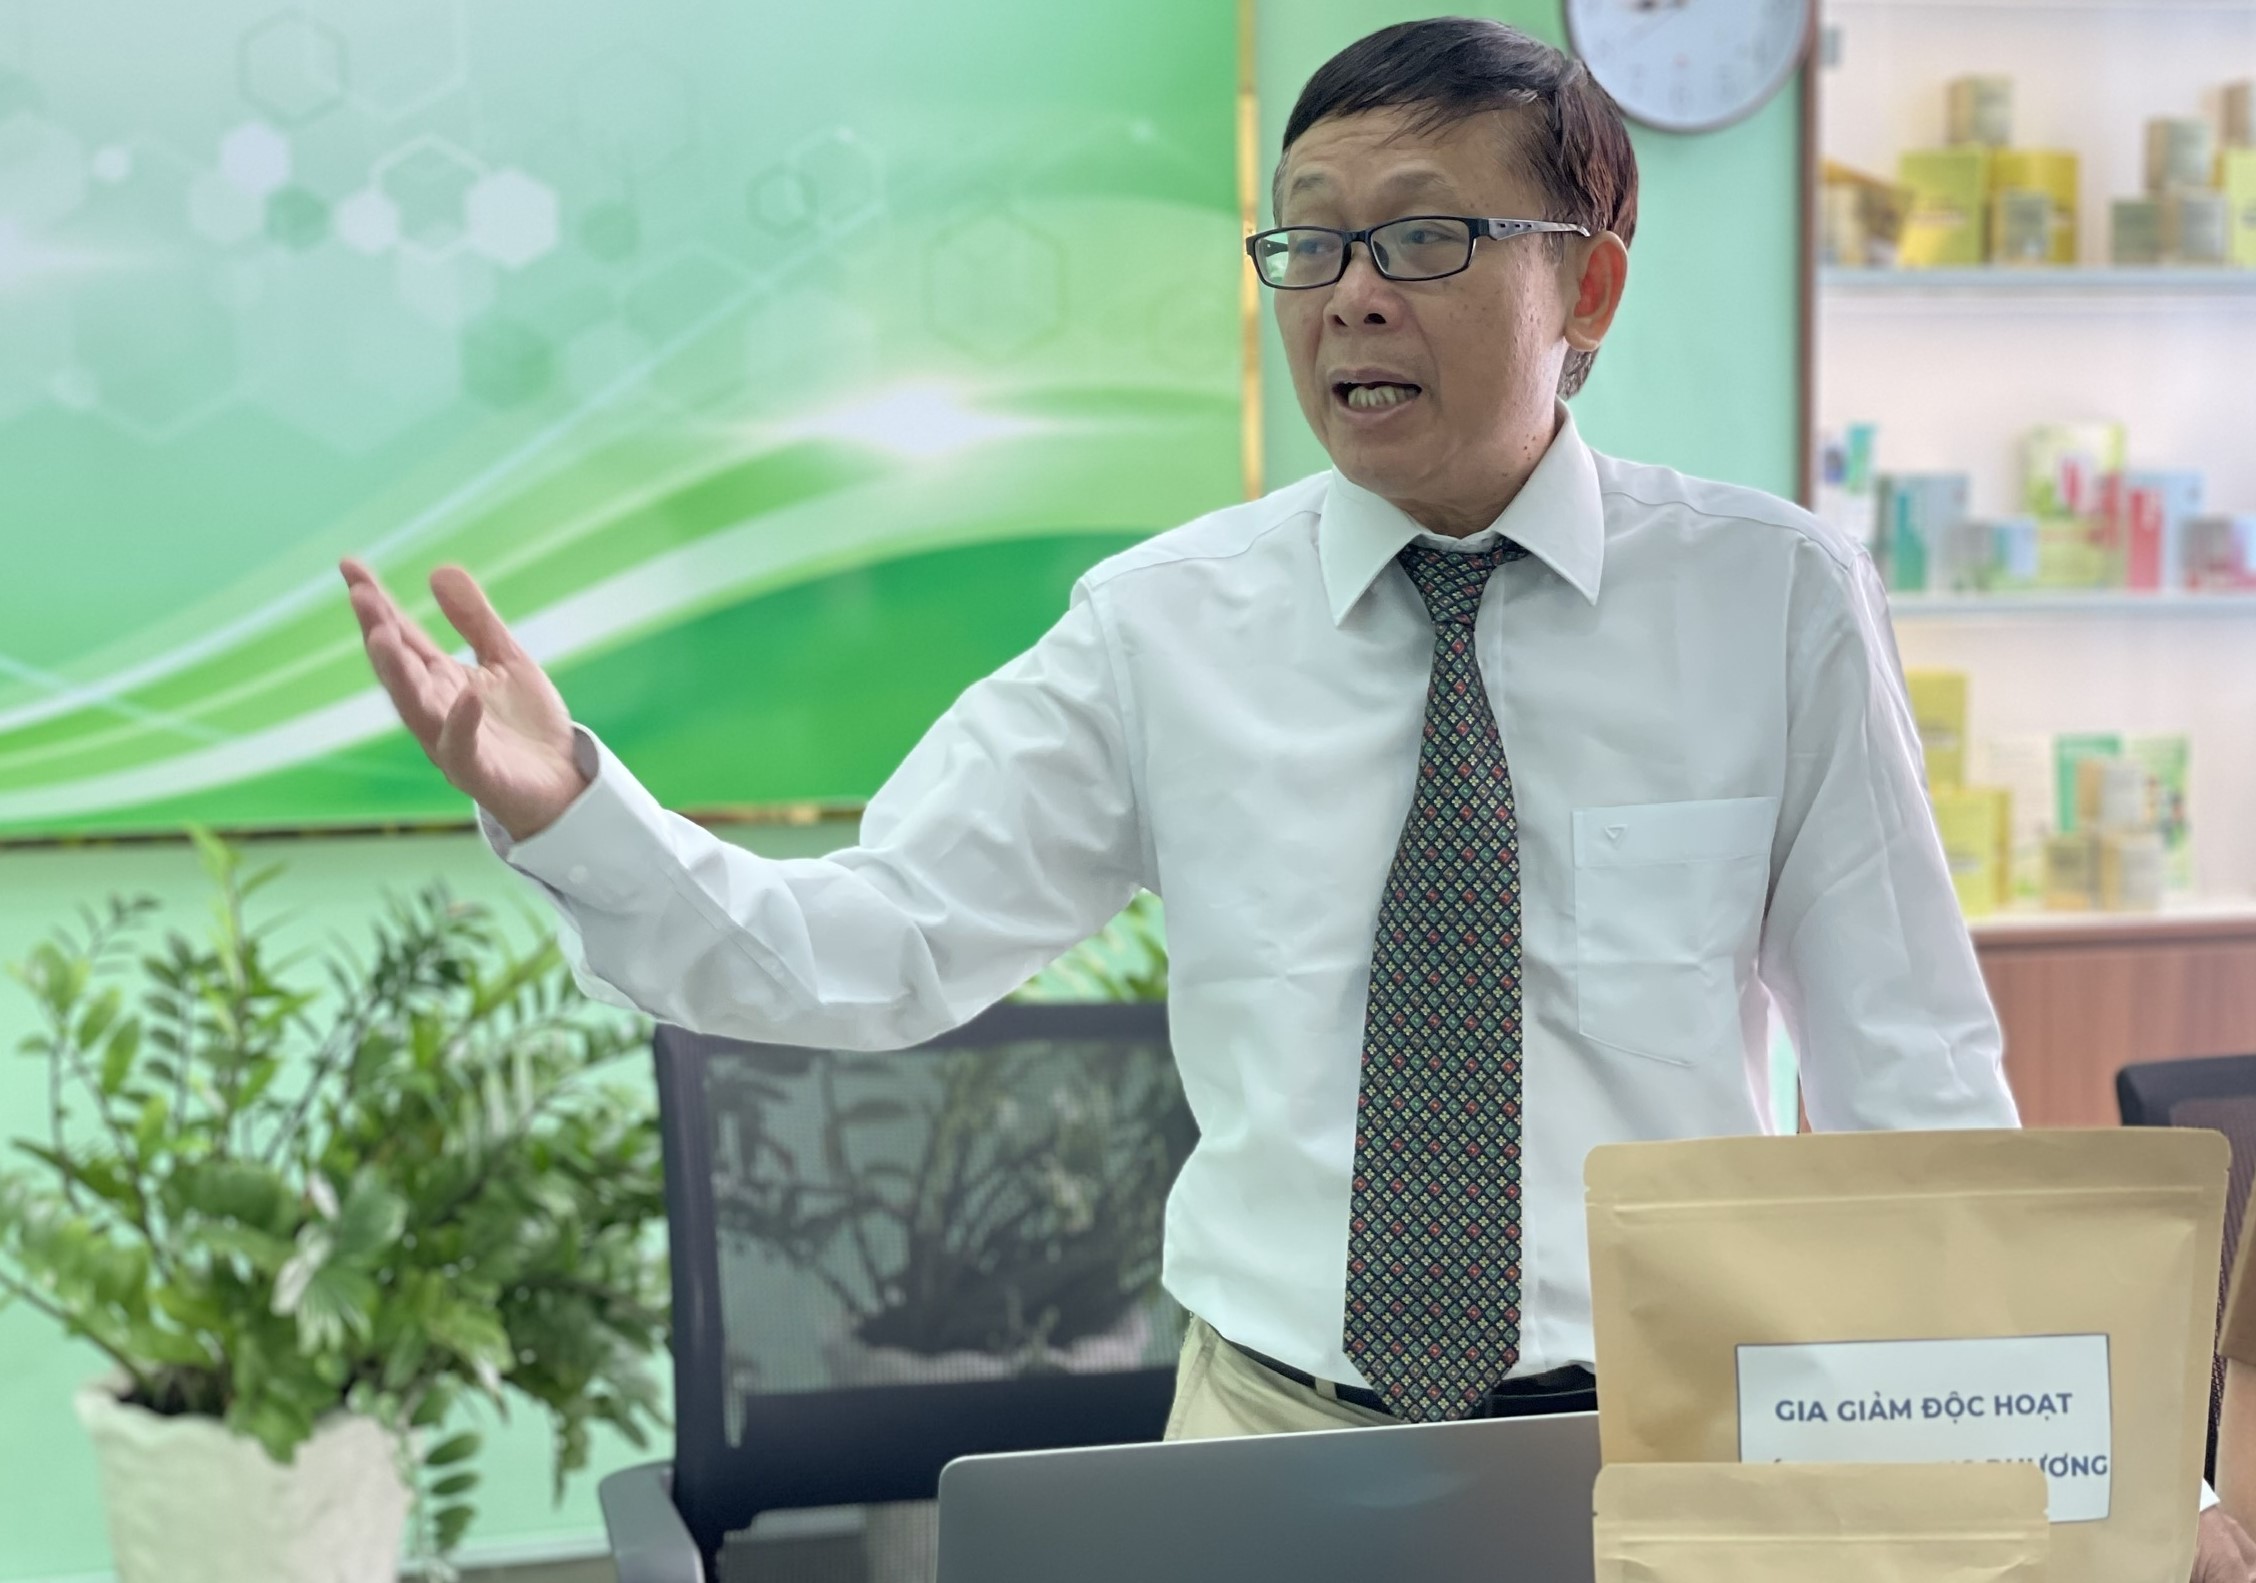 GS Nguyễn Cửu khoa chia sẻ về nghiên cứu nano hóa thuốc y học cổ truyền tại buổi báo cáo tại Viện Khoa học Vật liệu Ứng dụng, hôm 25/7. Ảnh: Hà An